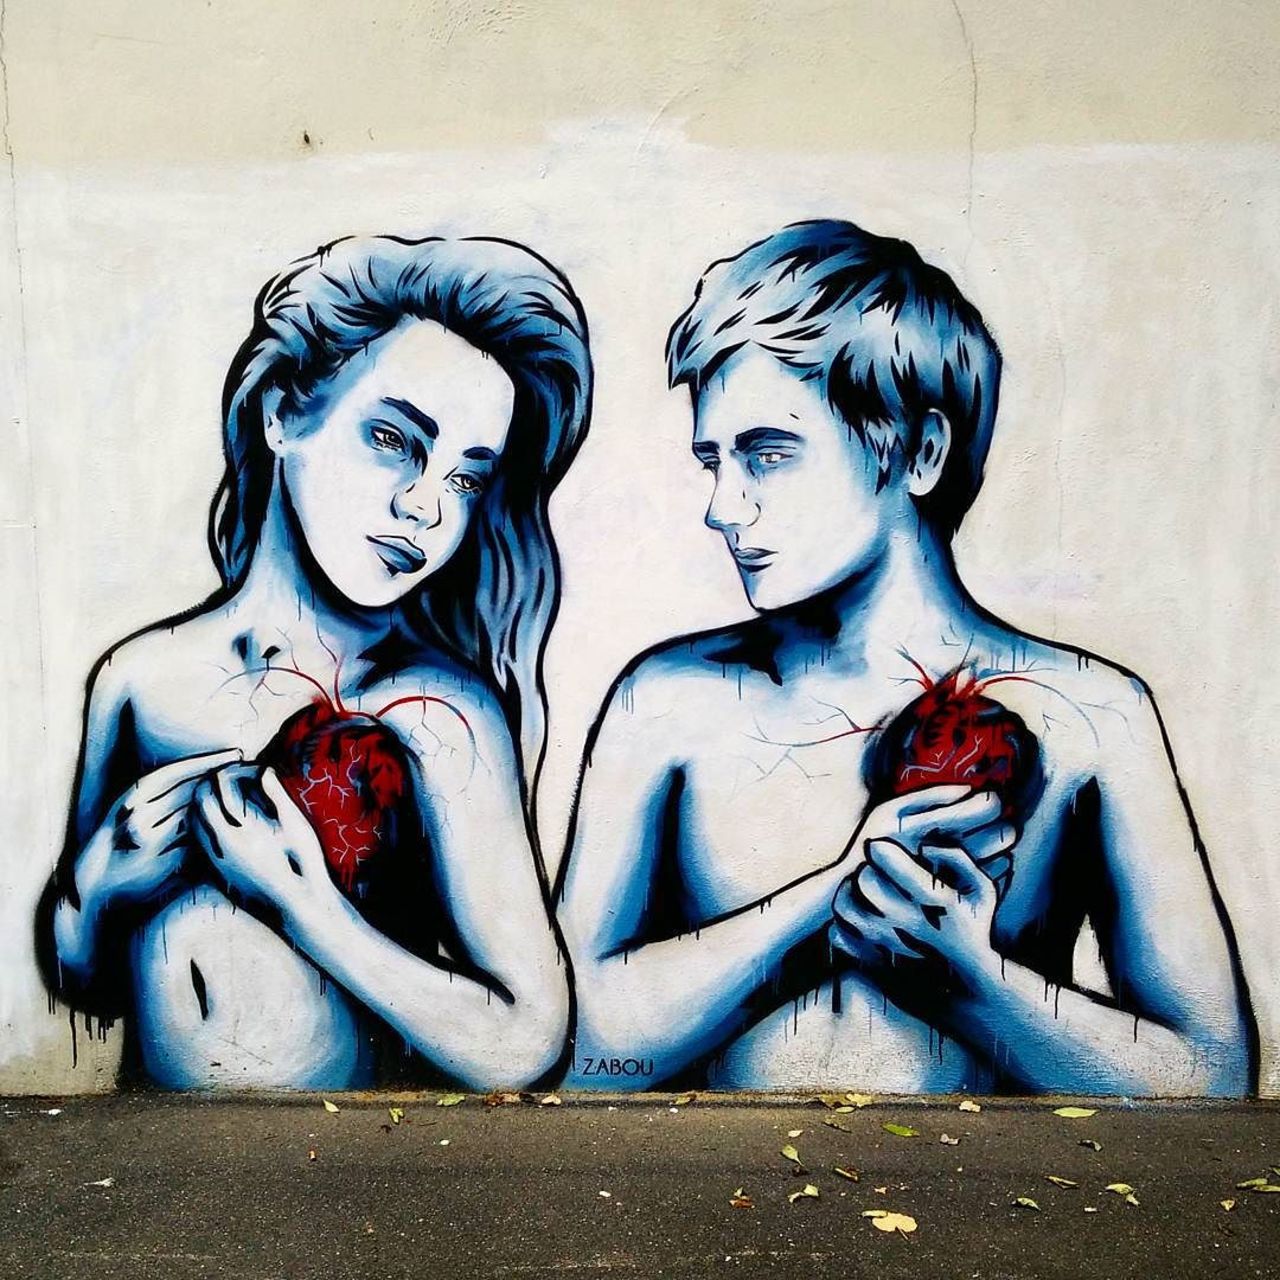 #Paris #graffiti photo by @ceky_art http://ift.tt/1Lvt75L #StreetArt https://t.co/KtiqK0aQOf